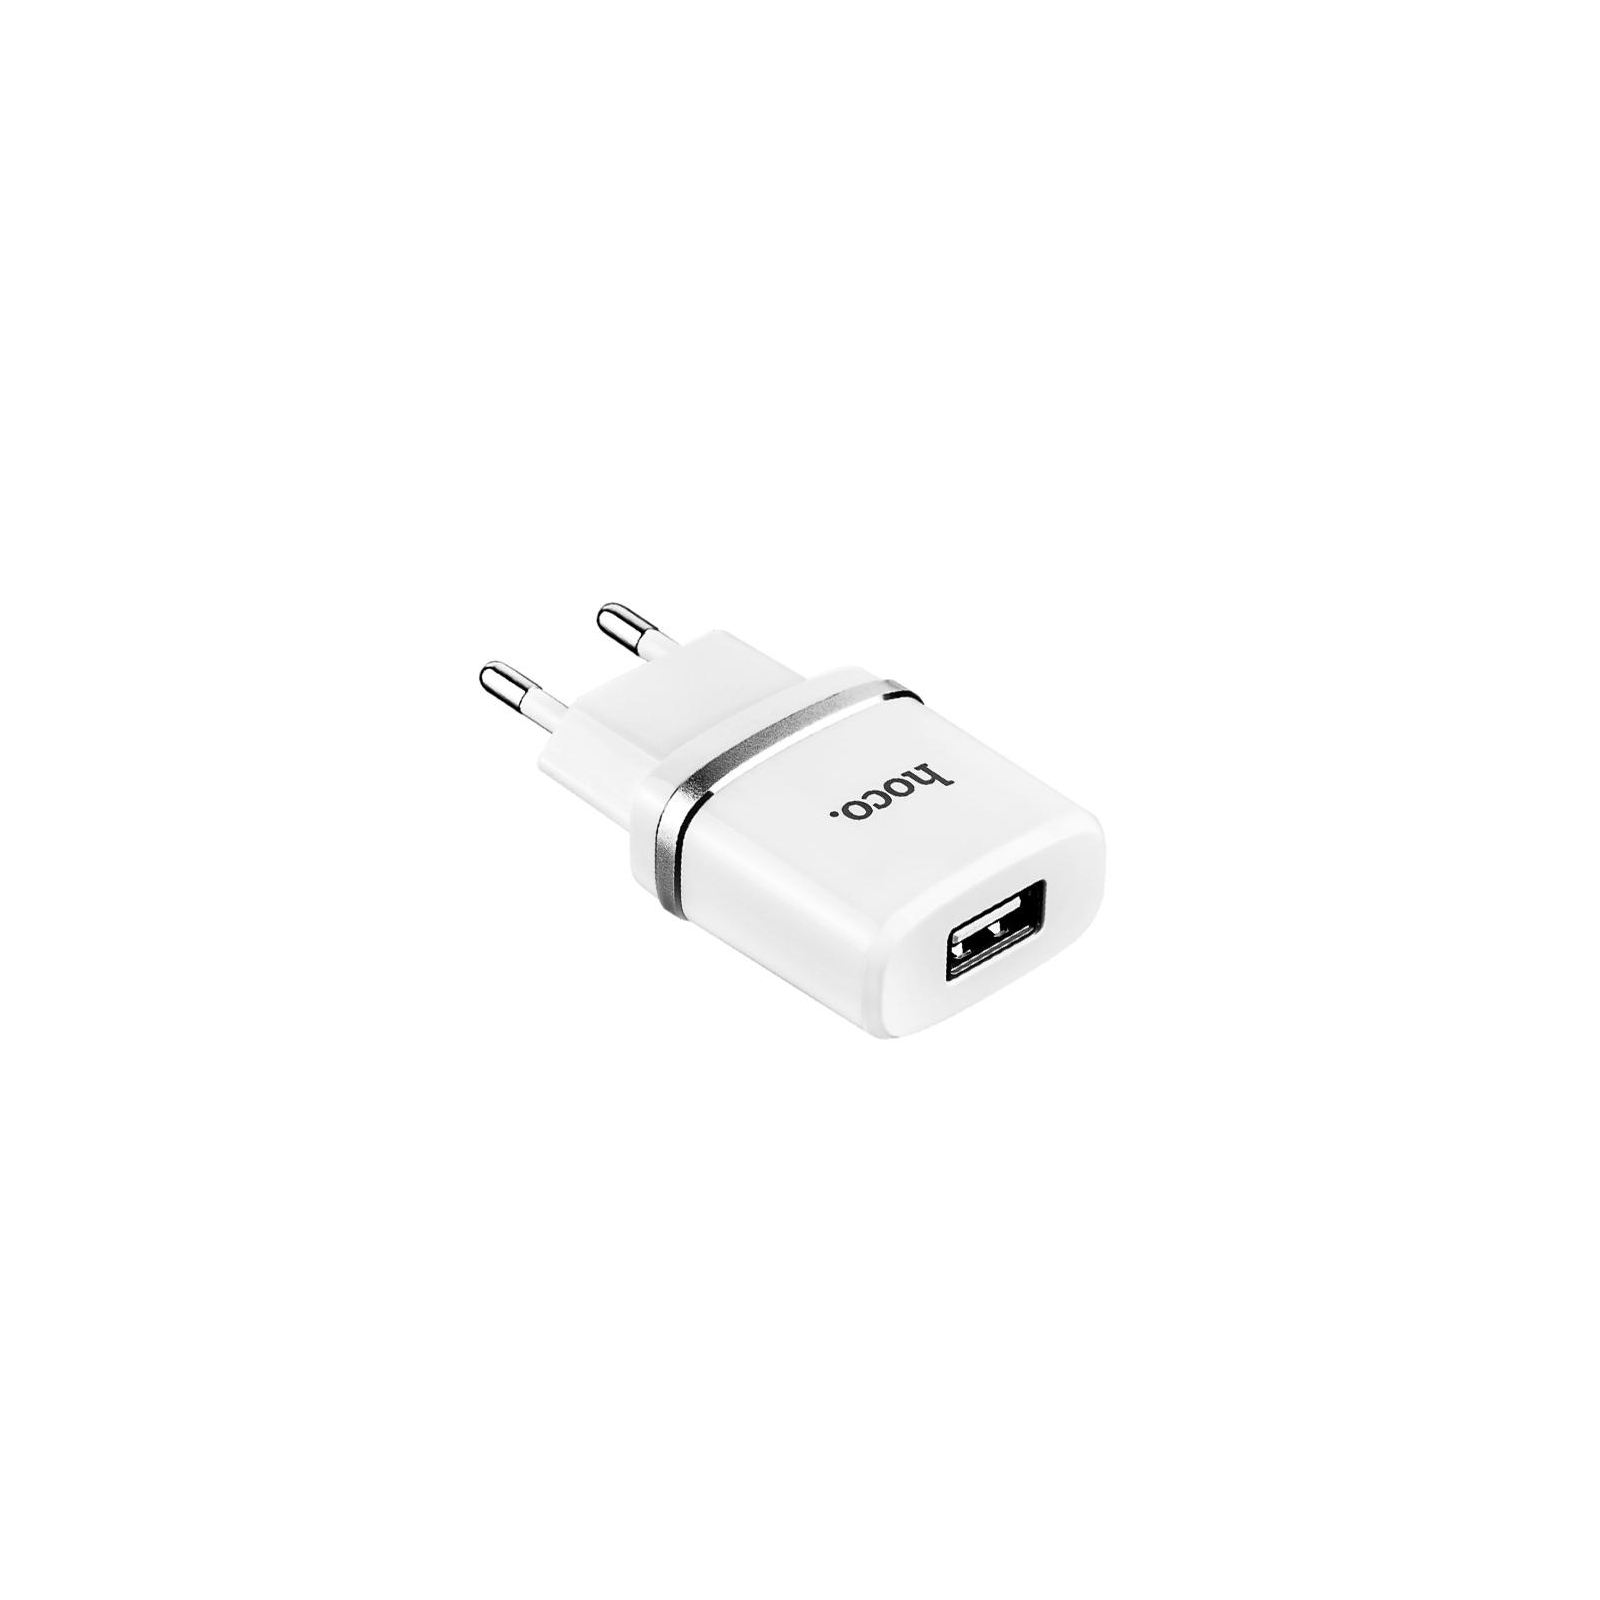 Зарядний пристрій HOCO C11 1*USB, 1A, White + USB Cable MicroUSB (63320) зображення 3